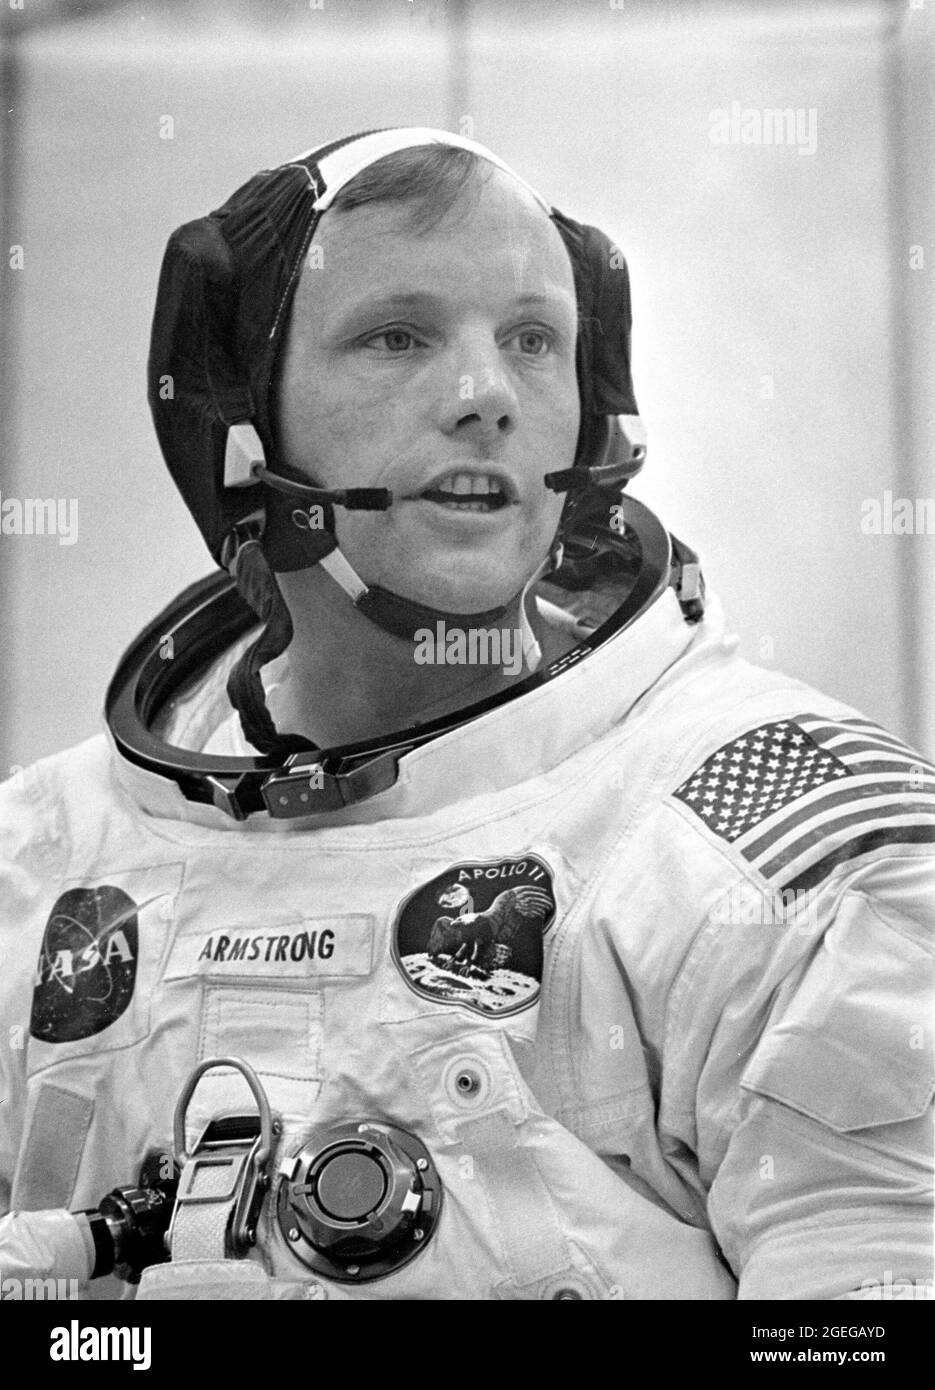 In seinem Raumanzug verflucht, führt Missionskommandant Neil A. Armstrong vor dem Einsteigen in die Apollo 11-Mission eine abschließende Überprüfung seines Kommunikationssystems durch. Die erste bemannte Mondmission, die am 16. Juli 1969 vom Kennedy Space Center, Florida, gestartet wurde und am 24. Juli 1969 sicher zur Erde zurückkehrte, wurde mit einem Saturn V-Trägerfahrzeug gestartet. Das Saturn-V-Fahrzeug wurde vom Marshall Space Flight Center (MSFC) unter der Leitung von Dr. Wernher von Braun entwickelt. Die 3-Mann-Besatzung an Bord des Fluges bestand aus den Astronauten Armstrong, Michael Collins, Pilot des Command Module (CM), und Edwin E. Aldri Stockfoto